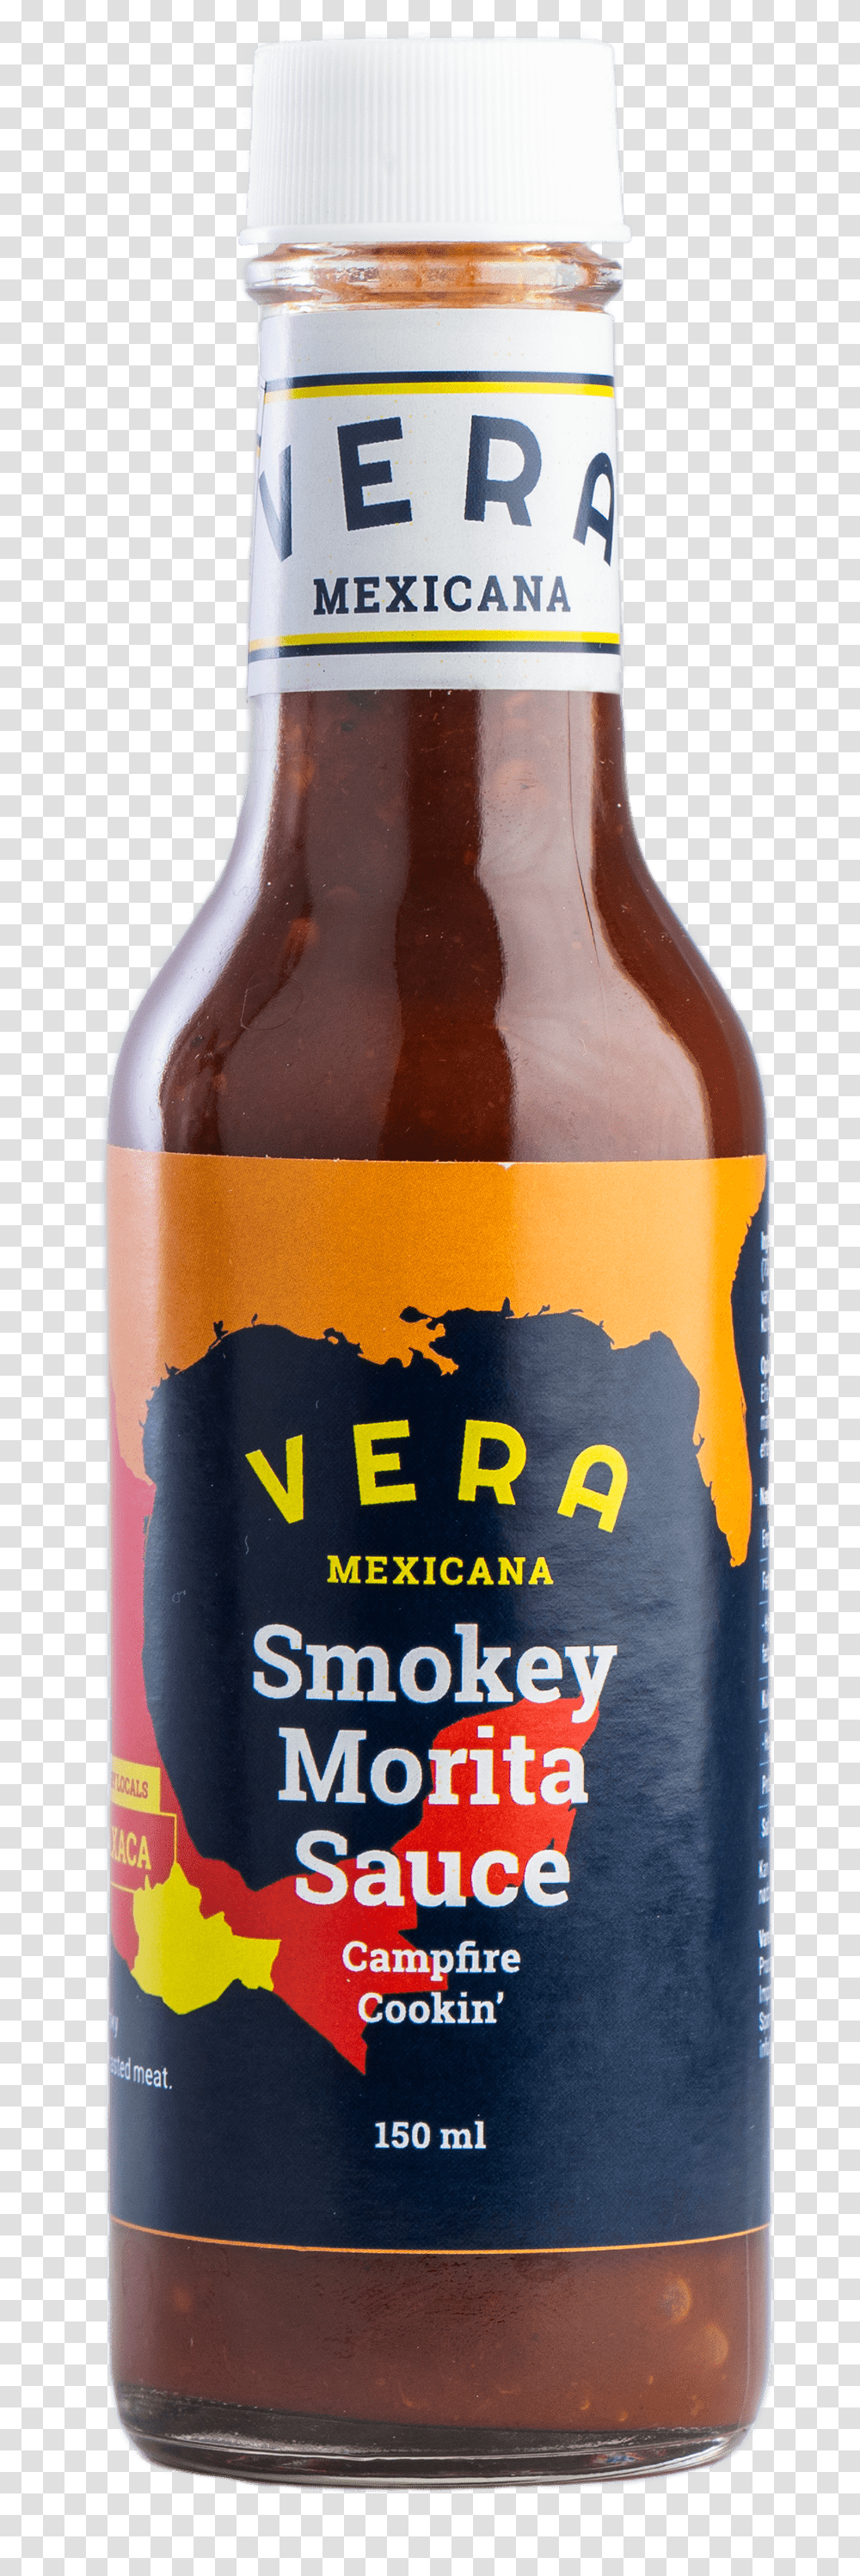 Smoky Morita Sauce Campfire Cookin Beer Bottle, Alcohol, Beverage, Drink, Lager Transparent Png